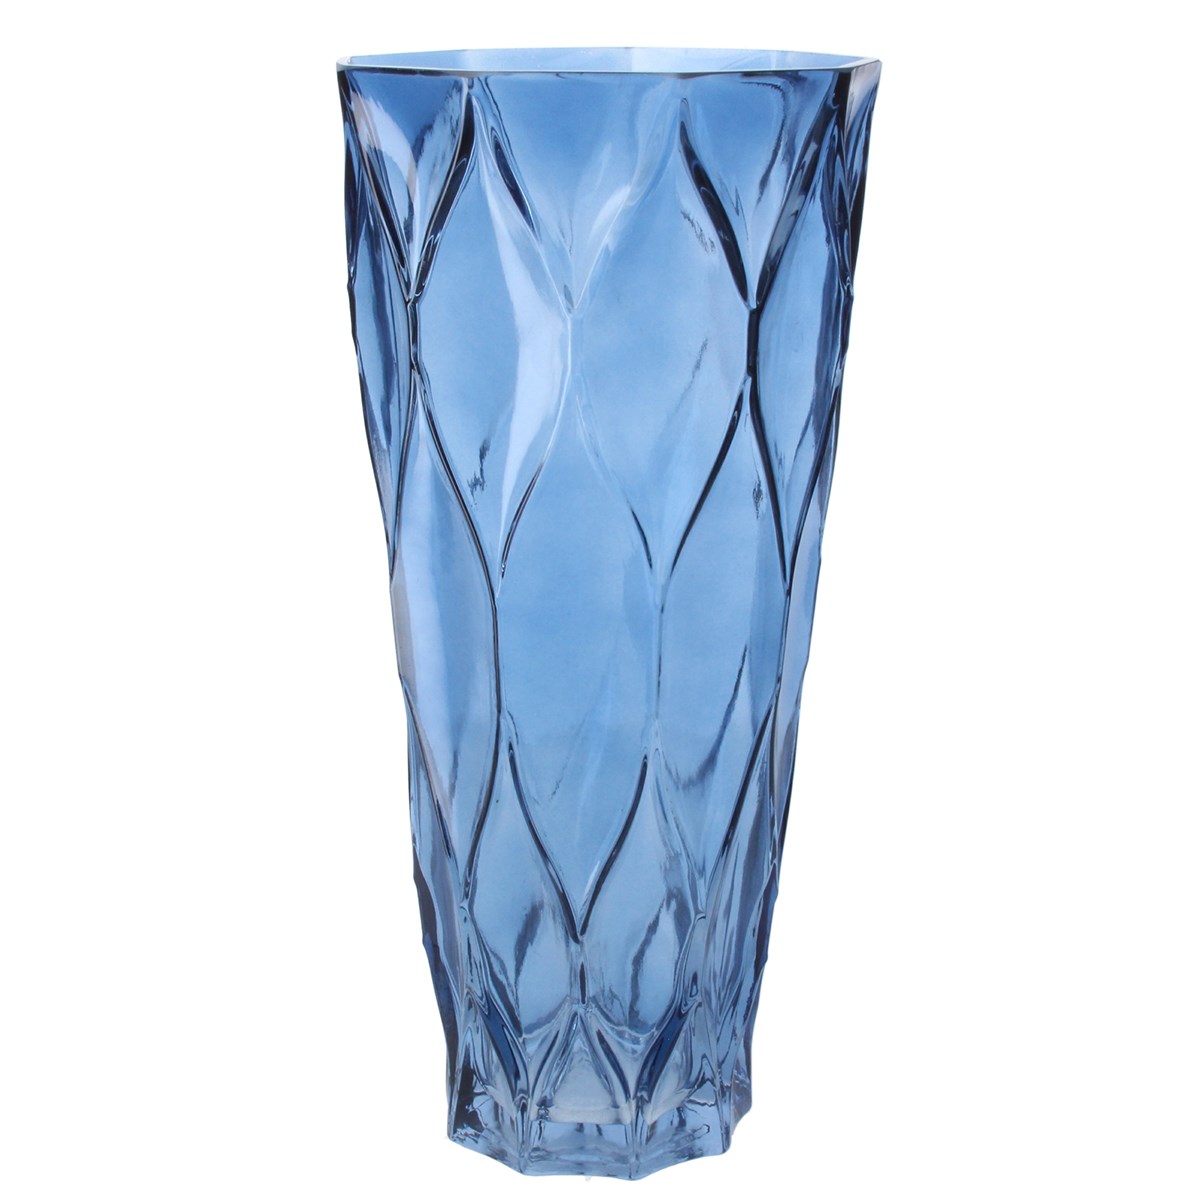 Gisela Graham Blue Trellis Glass Vase, Large